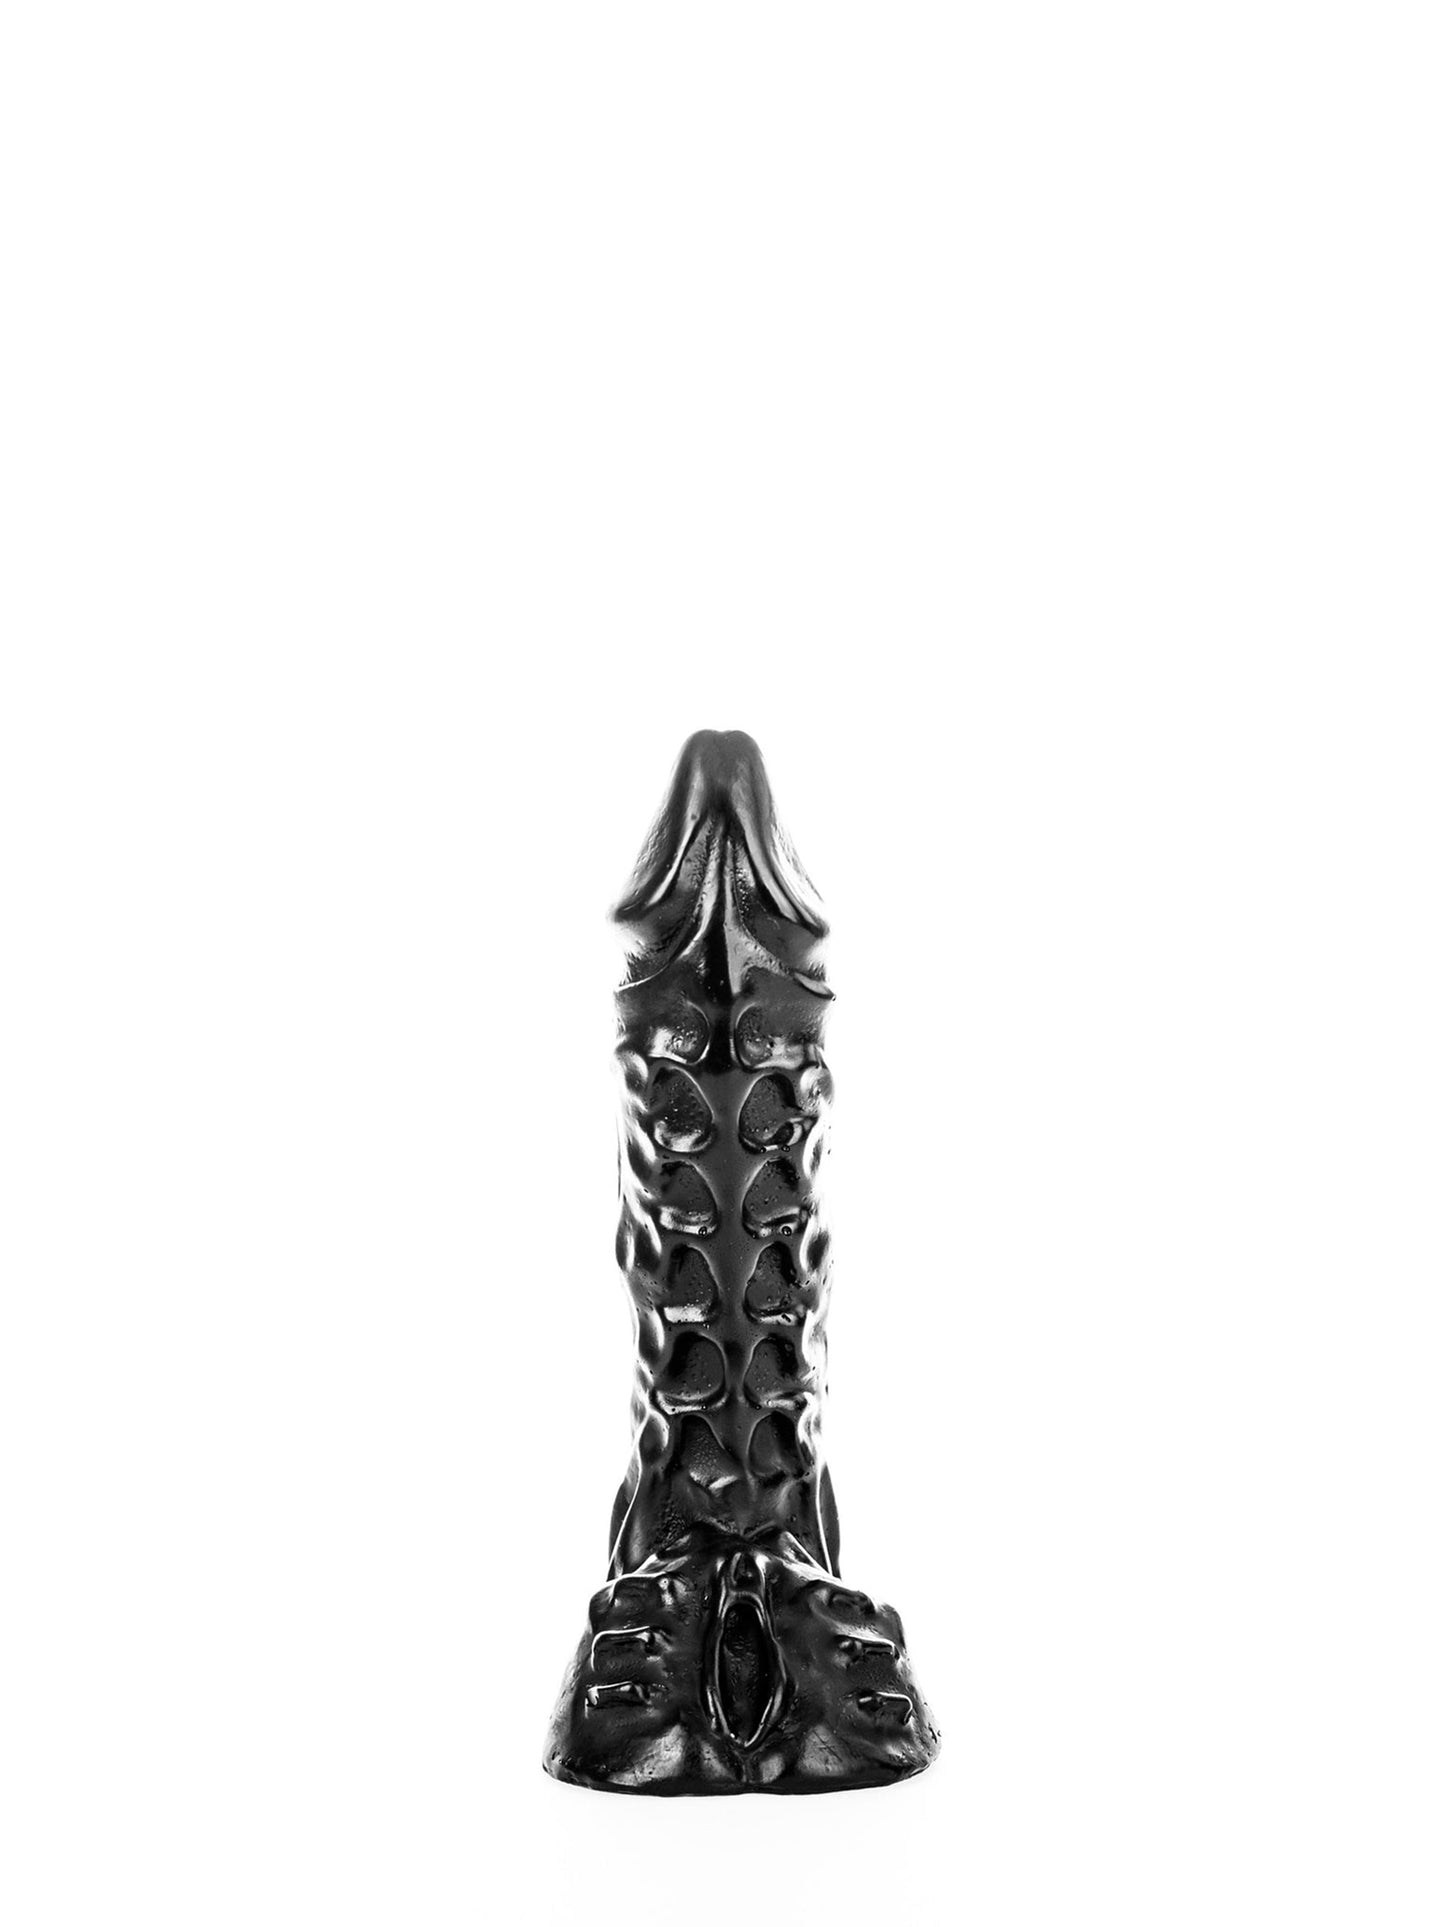 All Black - Dildo Pene Realistico Acanalado Dickie 23 cm